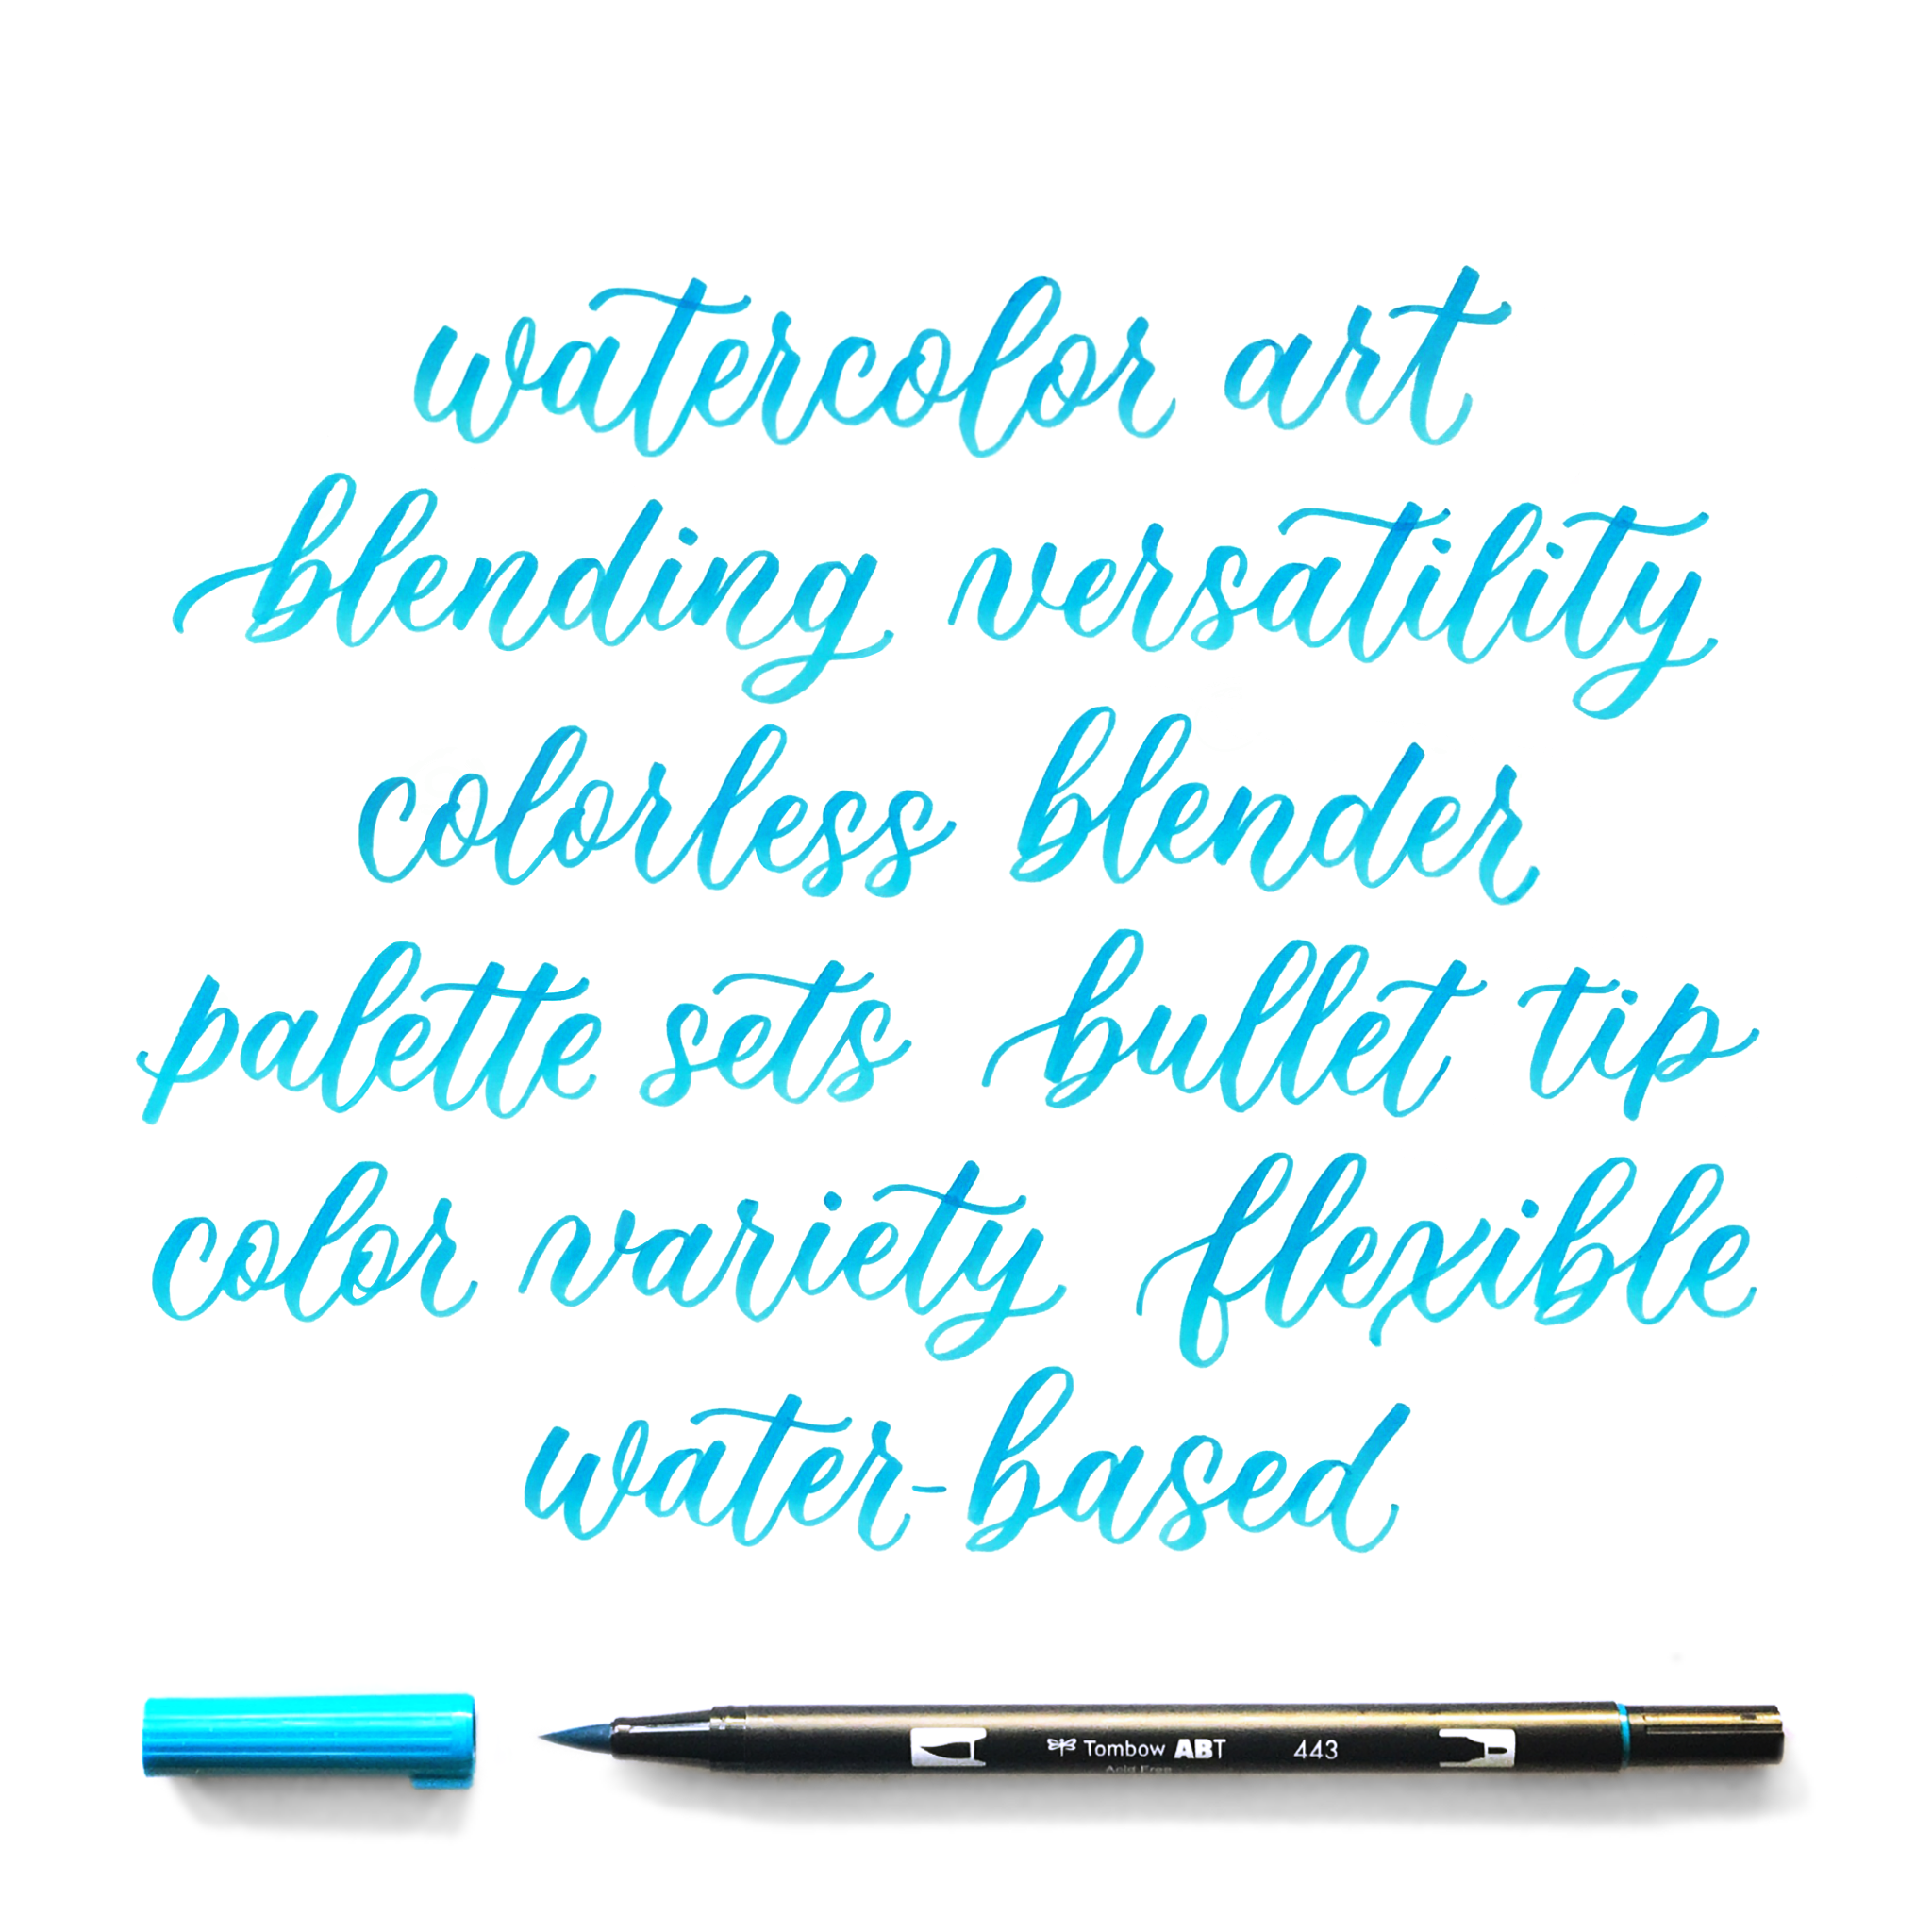 Brush Lettering for Beginners: Blending Brush Pens 